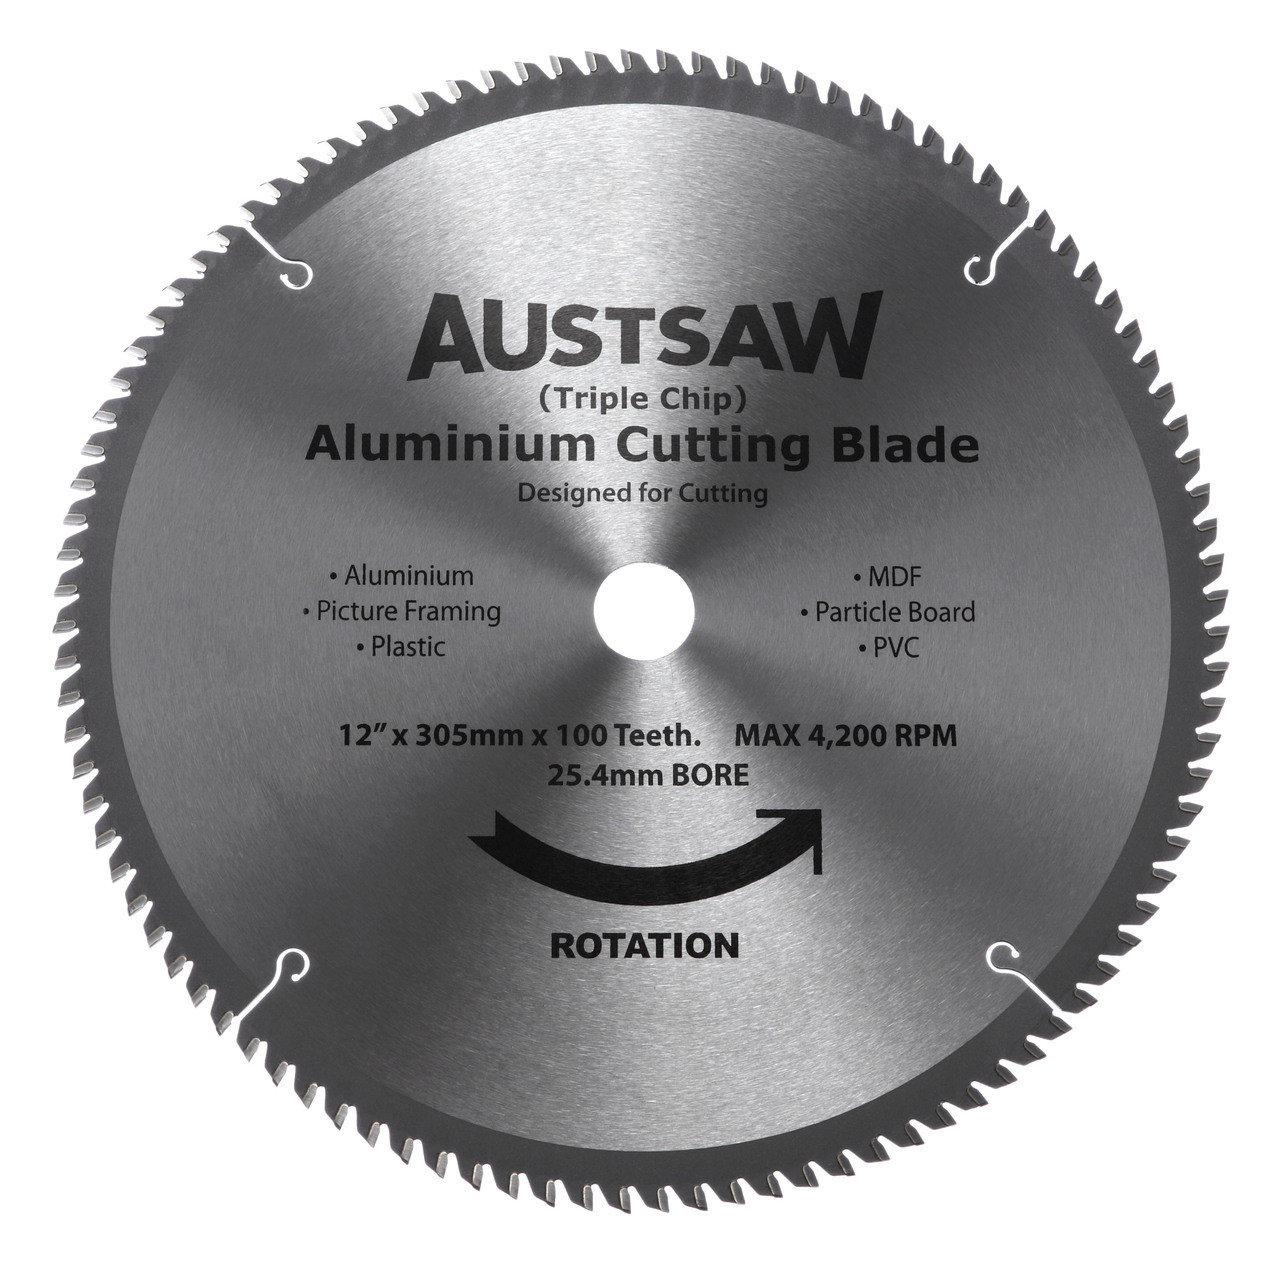 Aluminium Cutting Blades (Triple Chip)